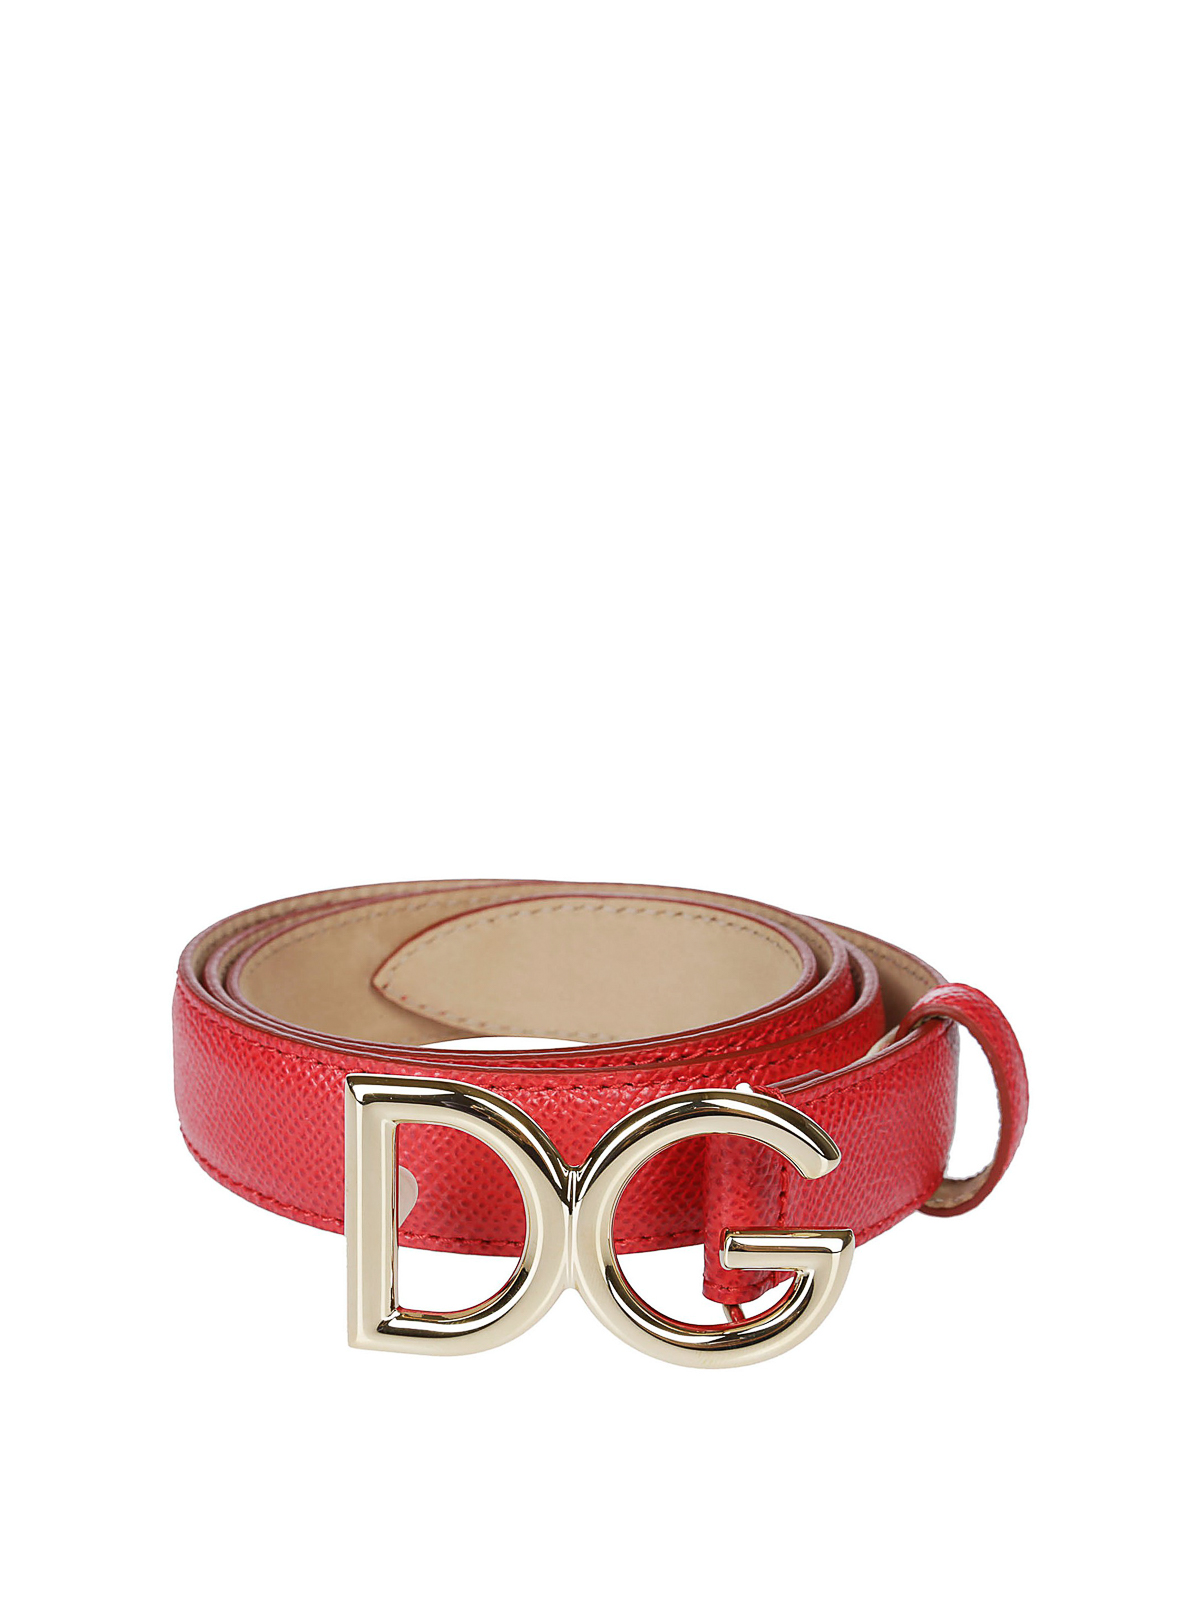 dolce and gabbana logo belt